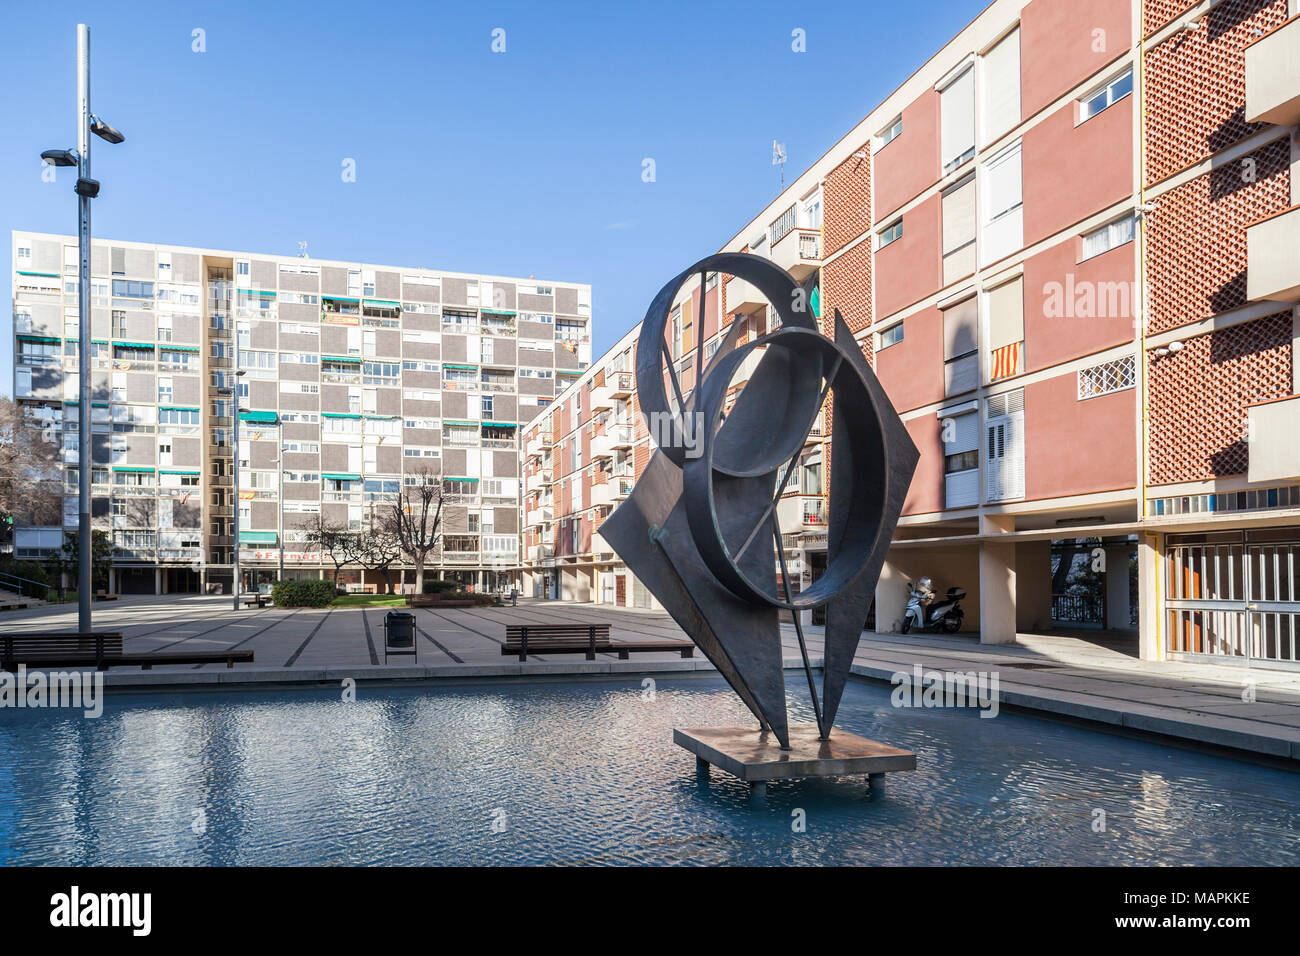 Arquitectura, el movimiento moderno en el barrio de Montbau, Barcelona, España. Foto de stock